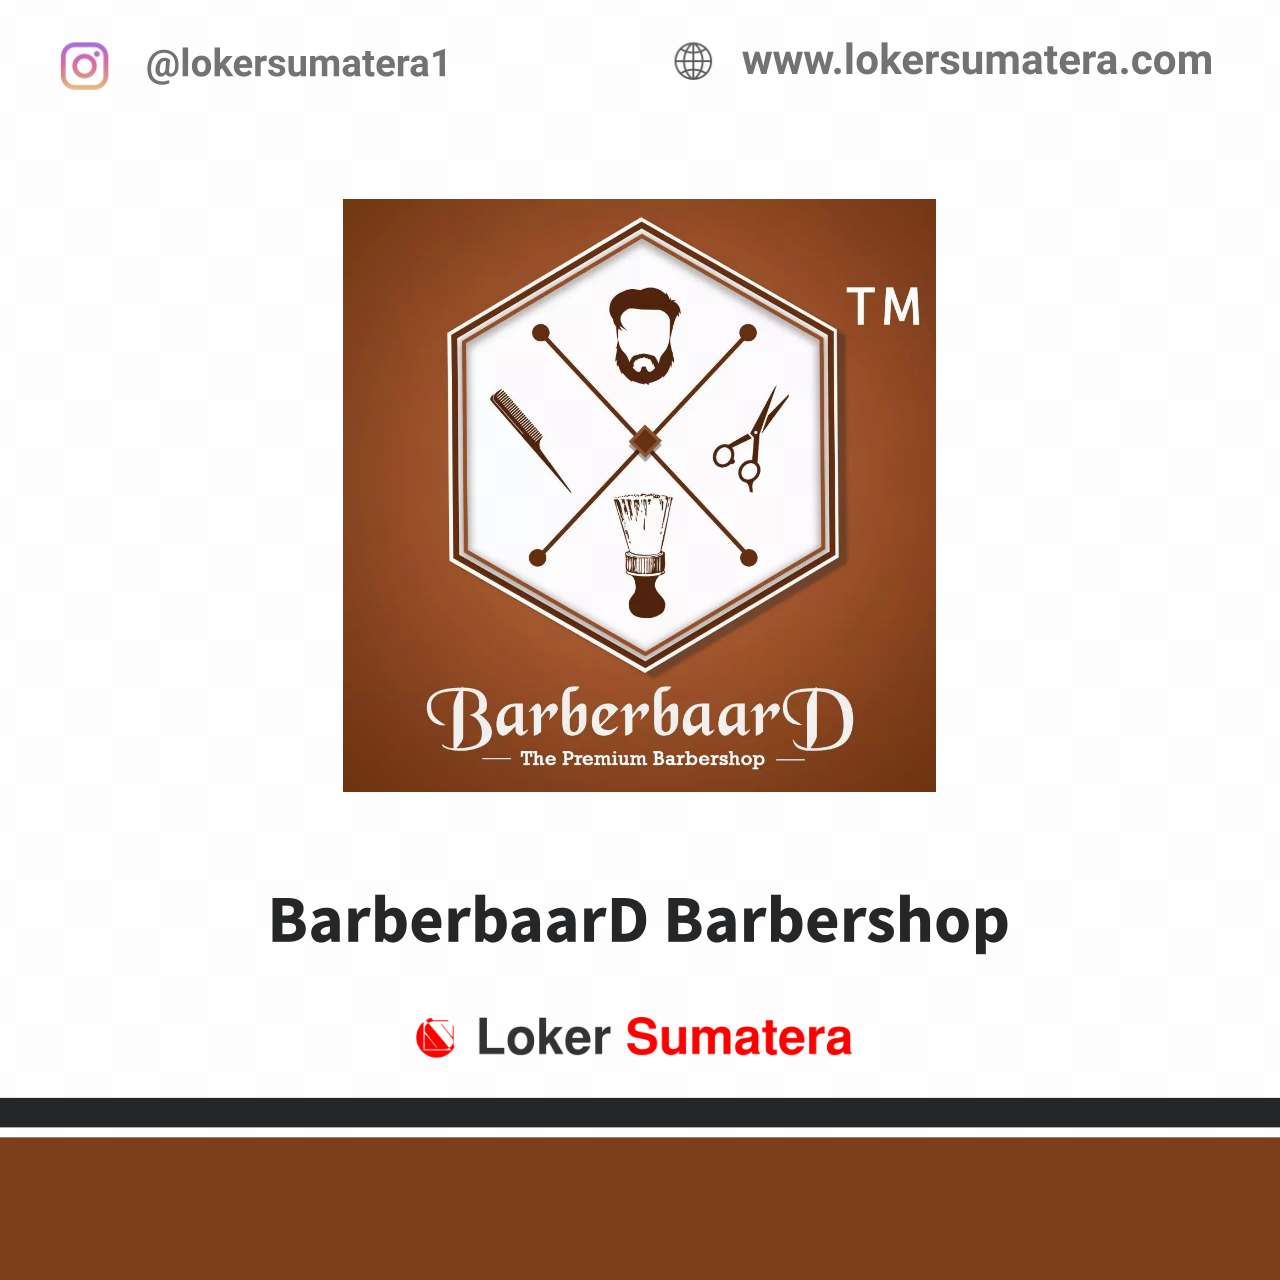 BarberbaarD Barbershop Pekanbaru